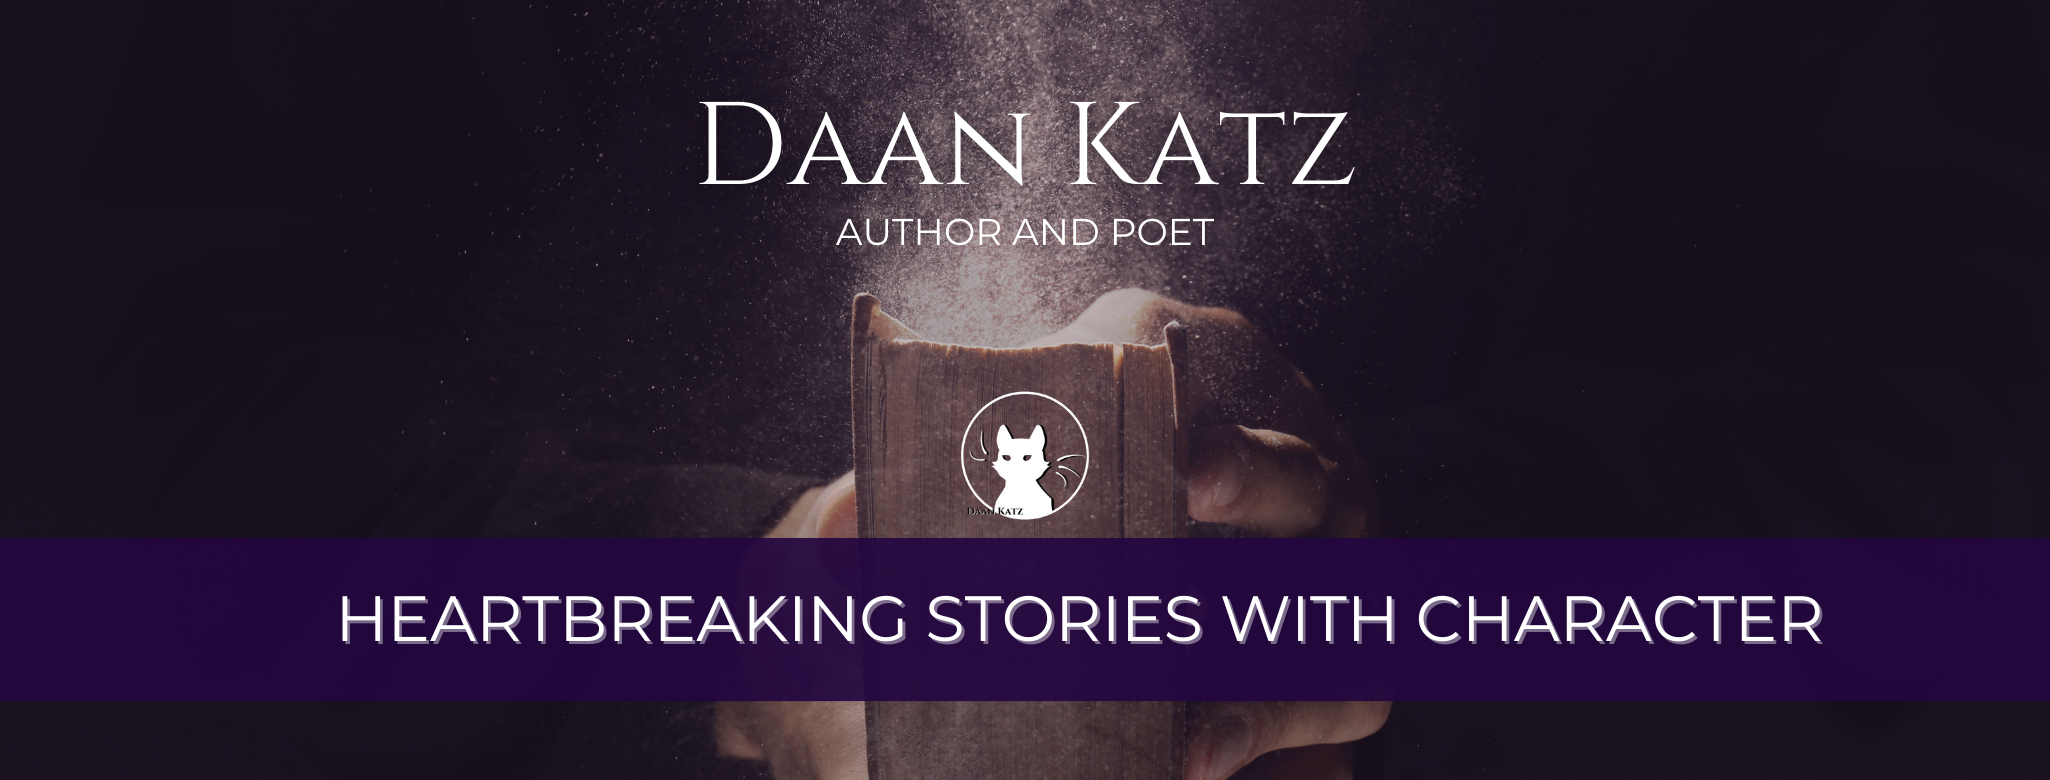 Daan Katz- Author and Poet. Heartbreaking Stories with Character.